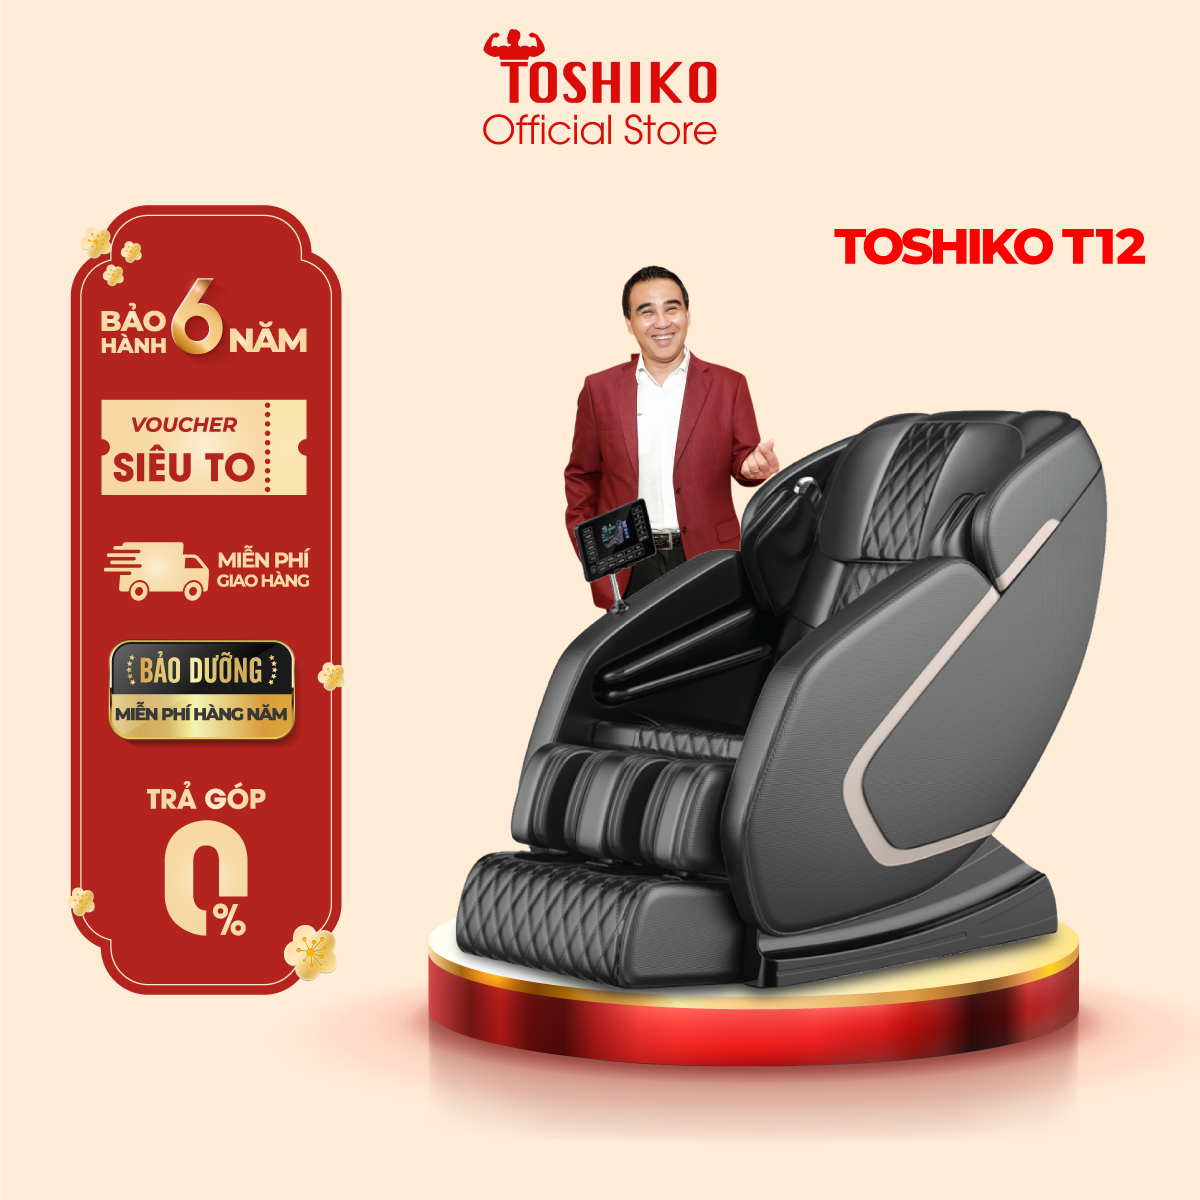 [TRẢ GÓP 0%] [Quà tặng trị giá 1,3TR]Ghế massage toàn thân Toshiko T12 – Ghế Matxa Trị Liệu Toàn Thân Cao Cấp bảo hành 6 năm, ghế massage tự động mát xa đa năng, ghế masssage toàn thân sở hữu hệ thống mát xa nhiệt hồng ngoại